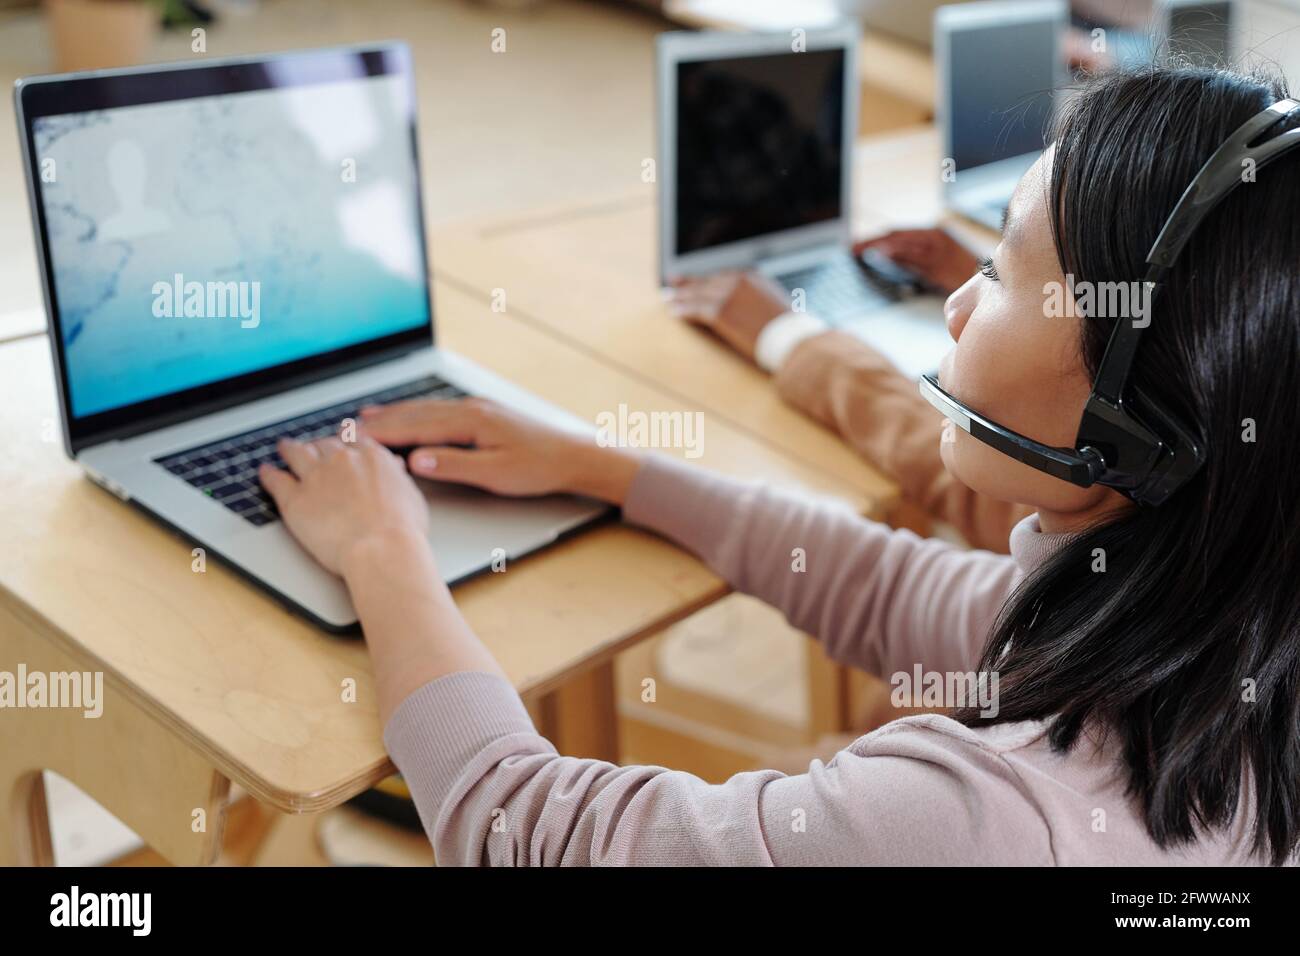 Überblicken Sie den geschäftigen jungen asiatischen Call Center-Betreiber In einem schnurlosen Headset mit Mikrofon, das den Kunden mit Informationen versorgt Notebook Stockfoto